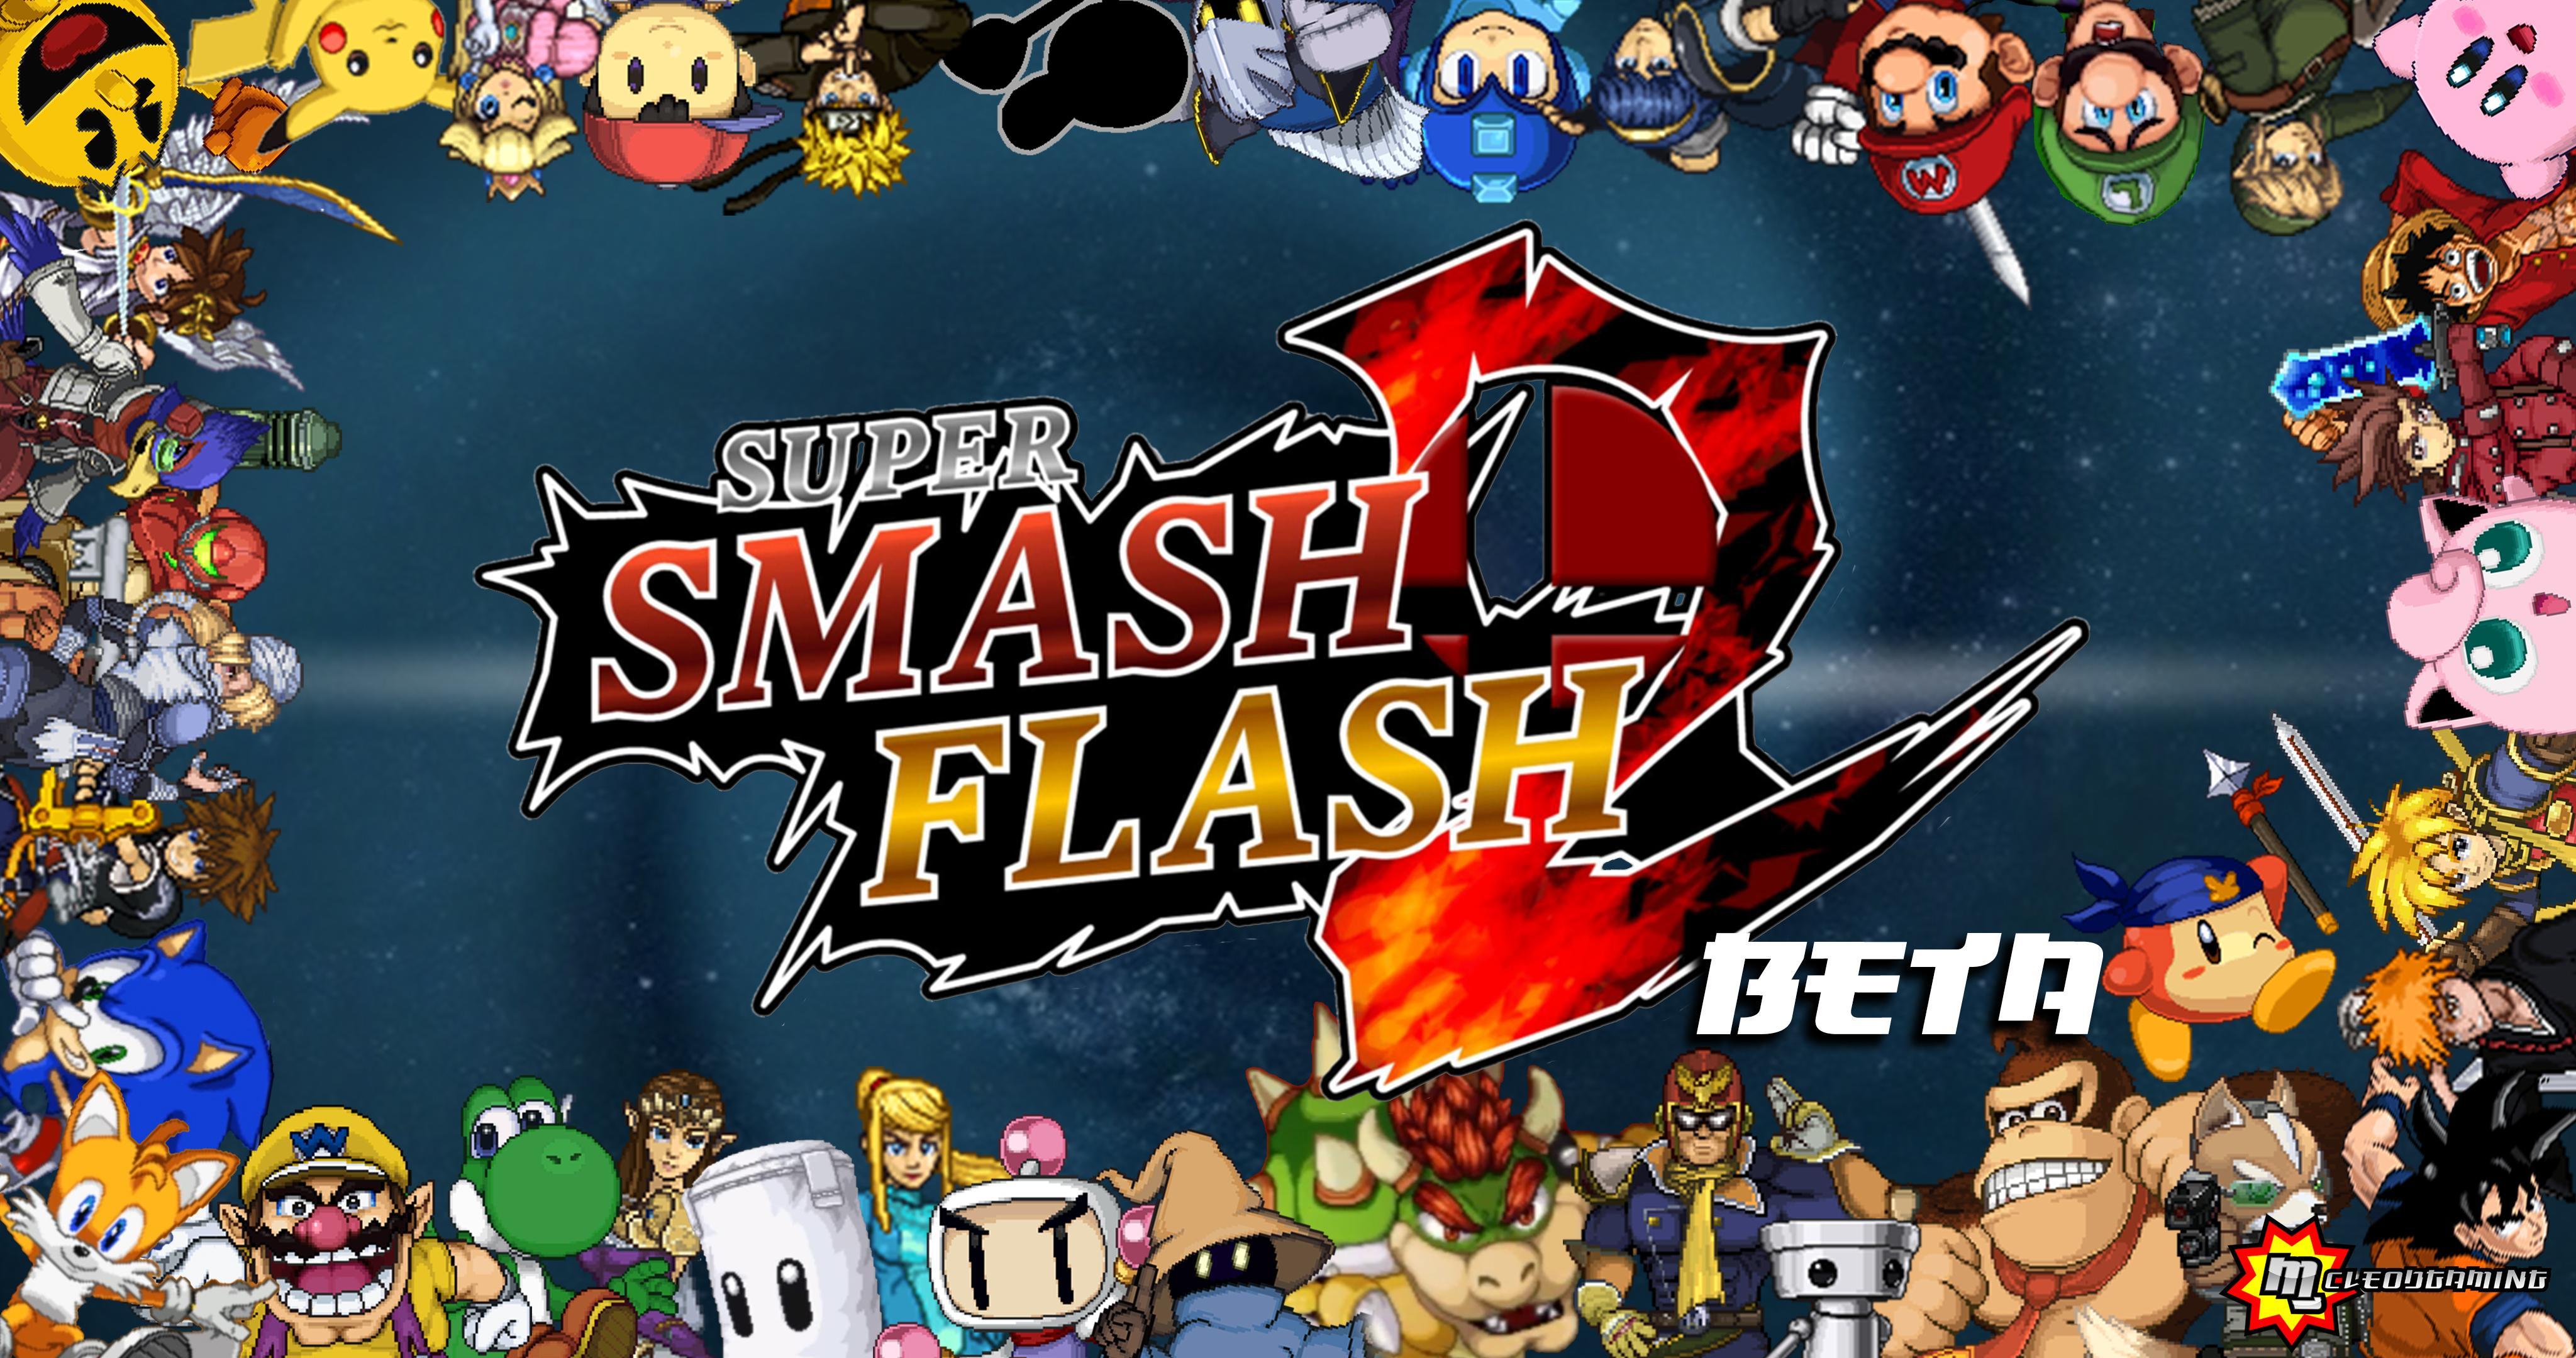 super smash flash 2 beta naruto mods download